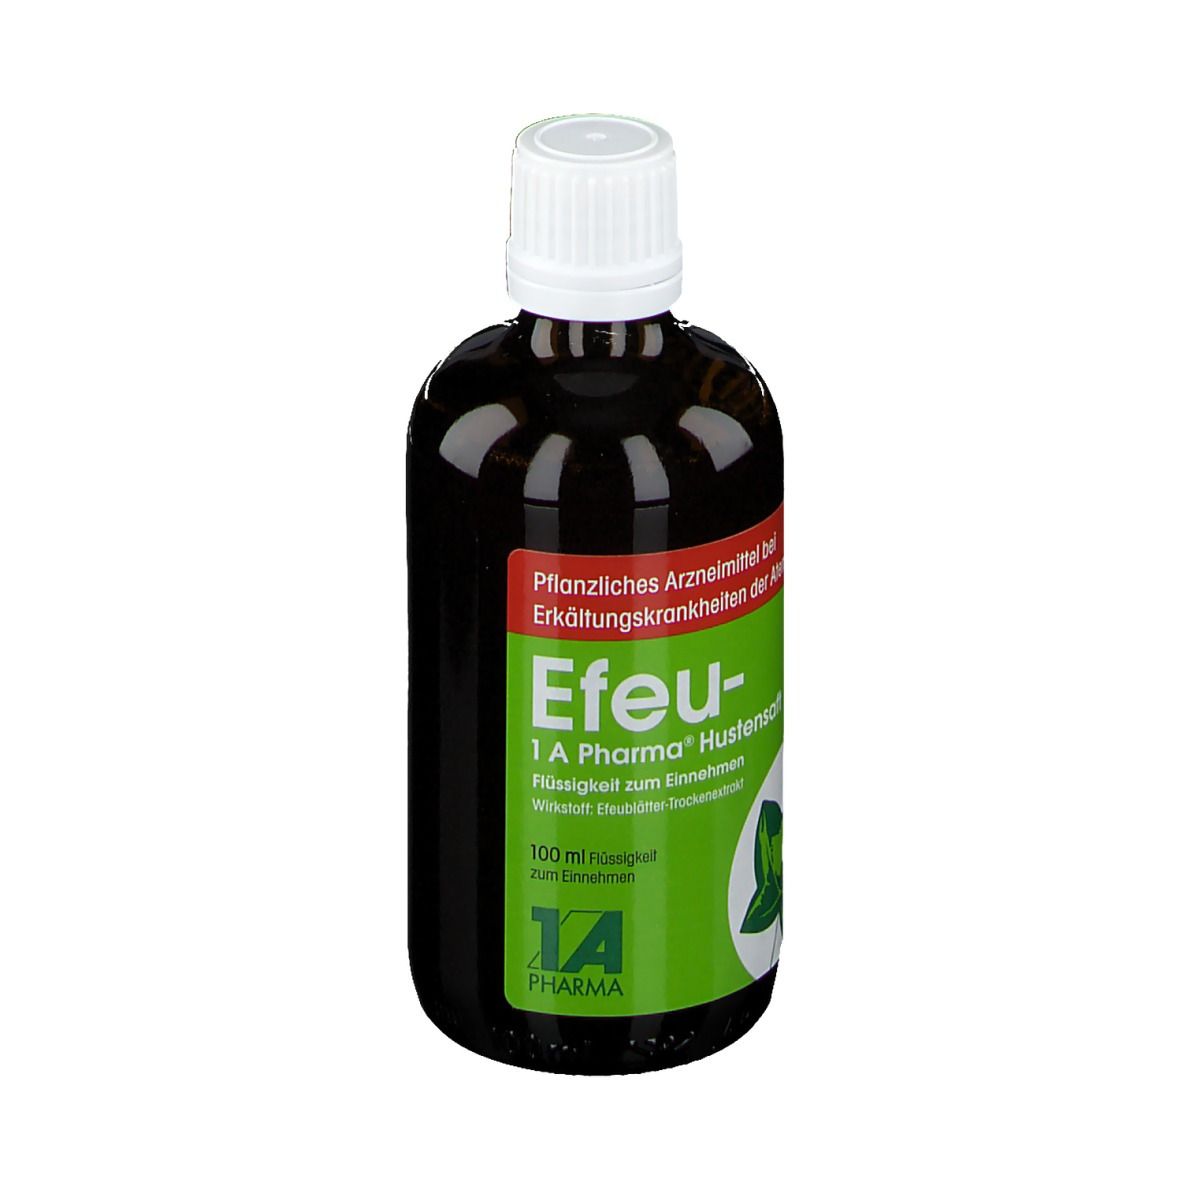 Efeu - 1 A Pharma®